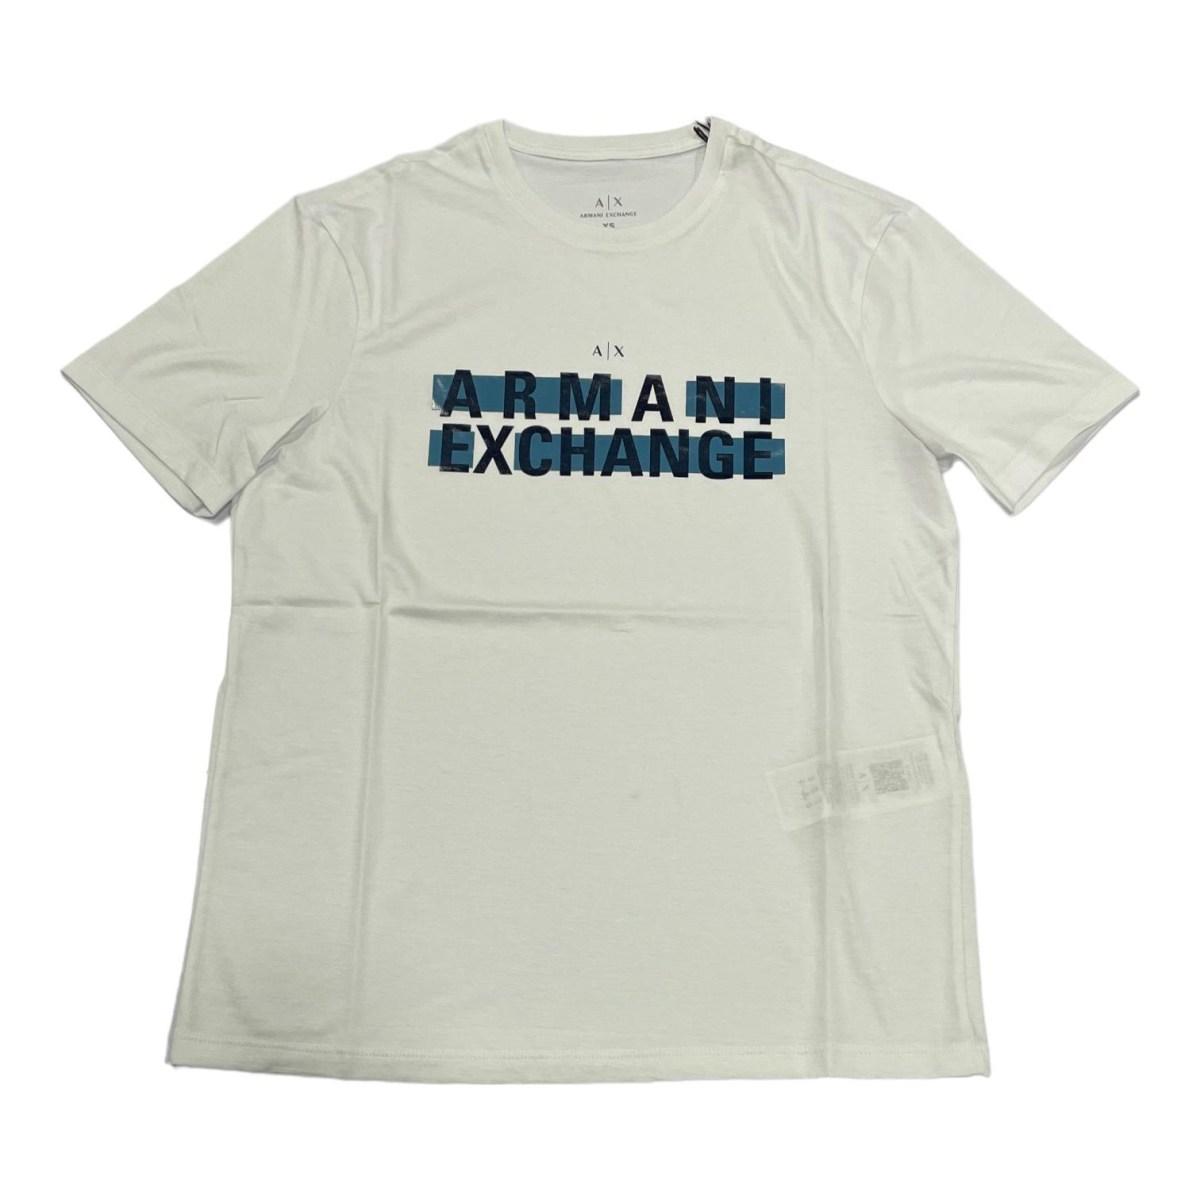 T-Shirt Uomo mm Exchange 3rztbc zja5z